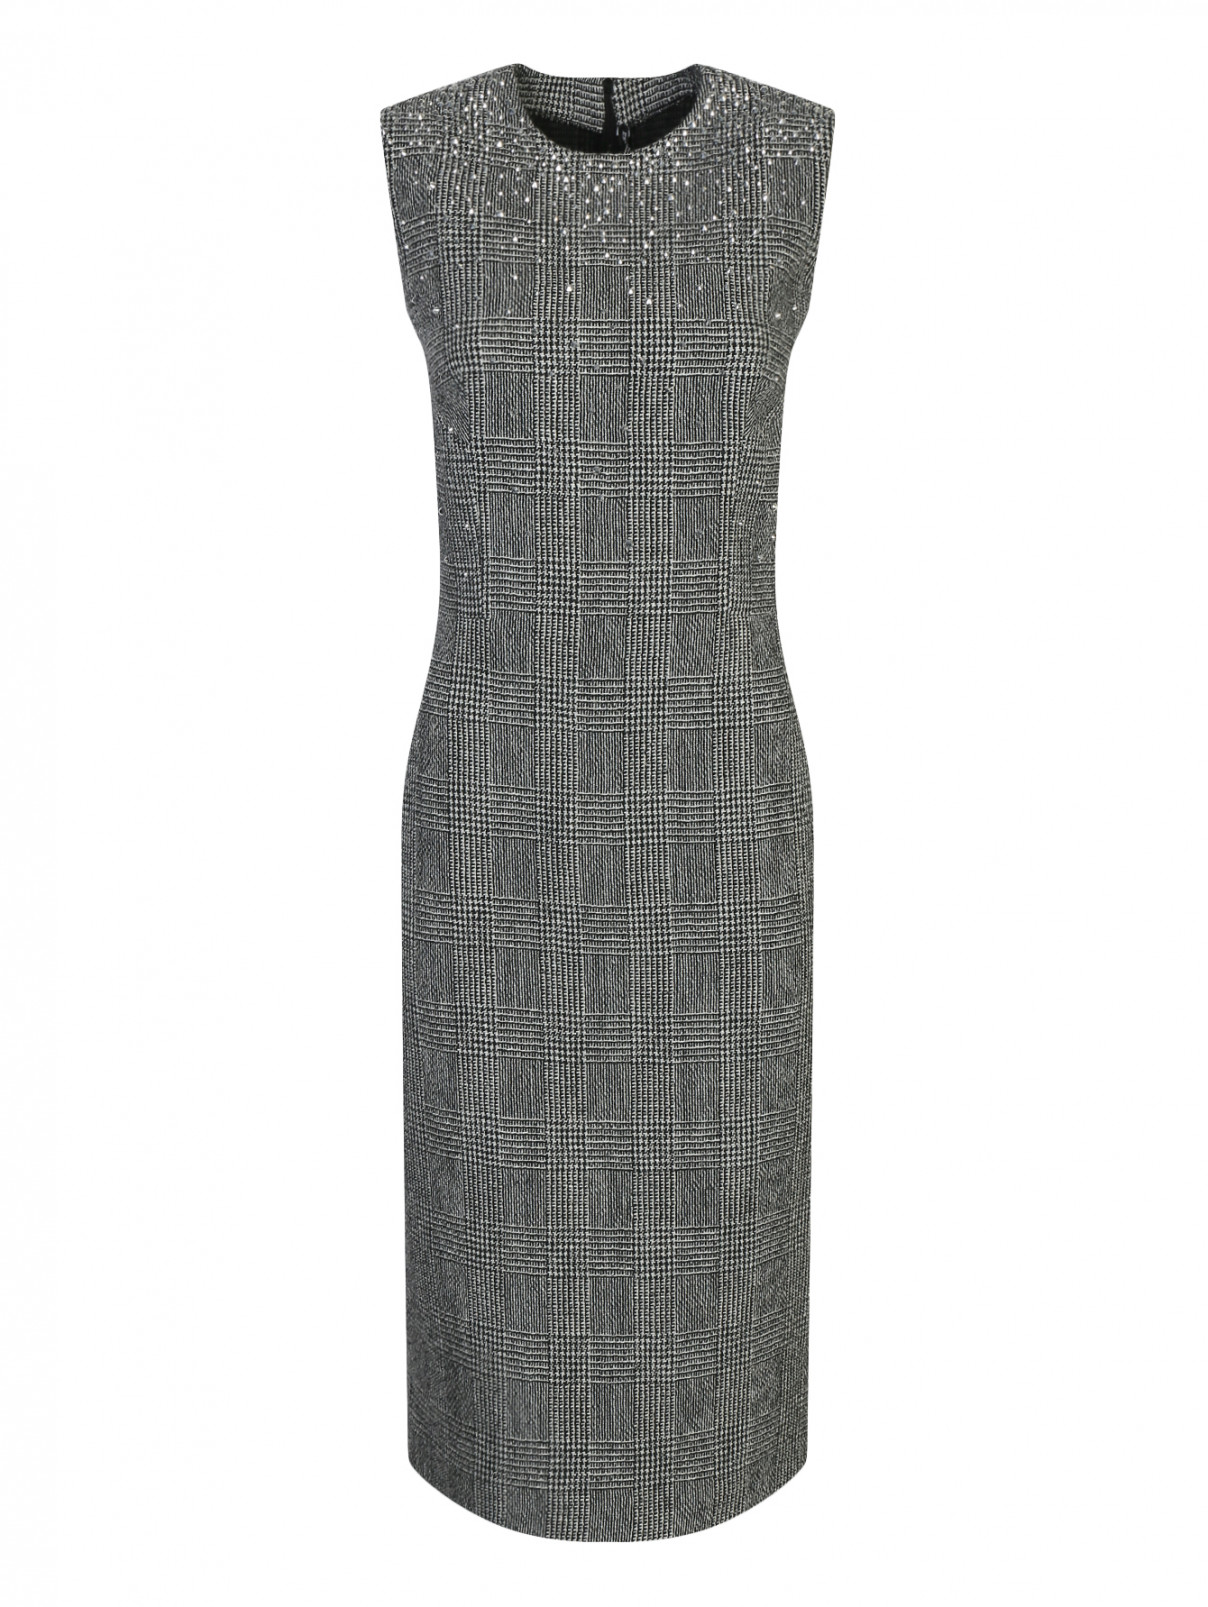 Платье-футляр из льна и шерсти декорированное стразами Ermanno Scervino  –  Общий вид  – Цвет:  Серый